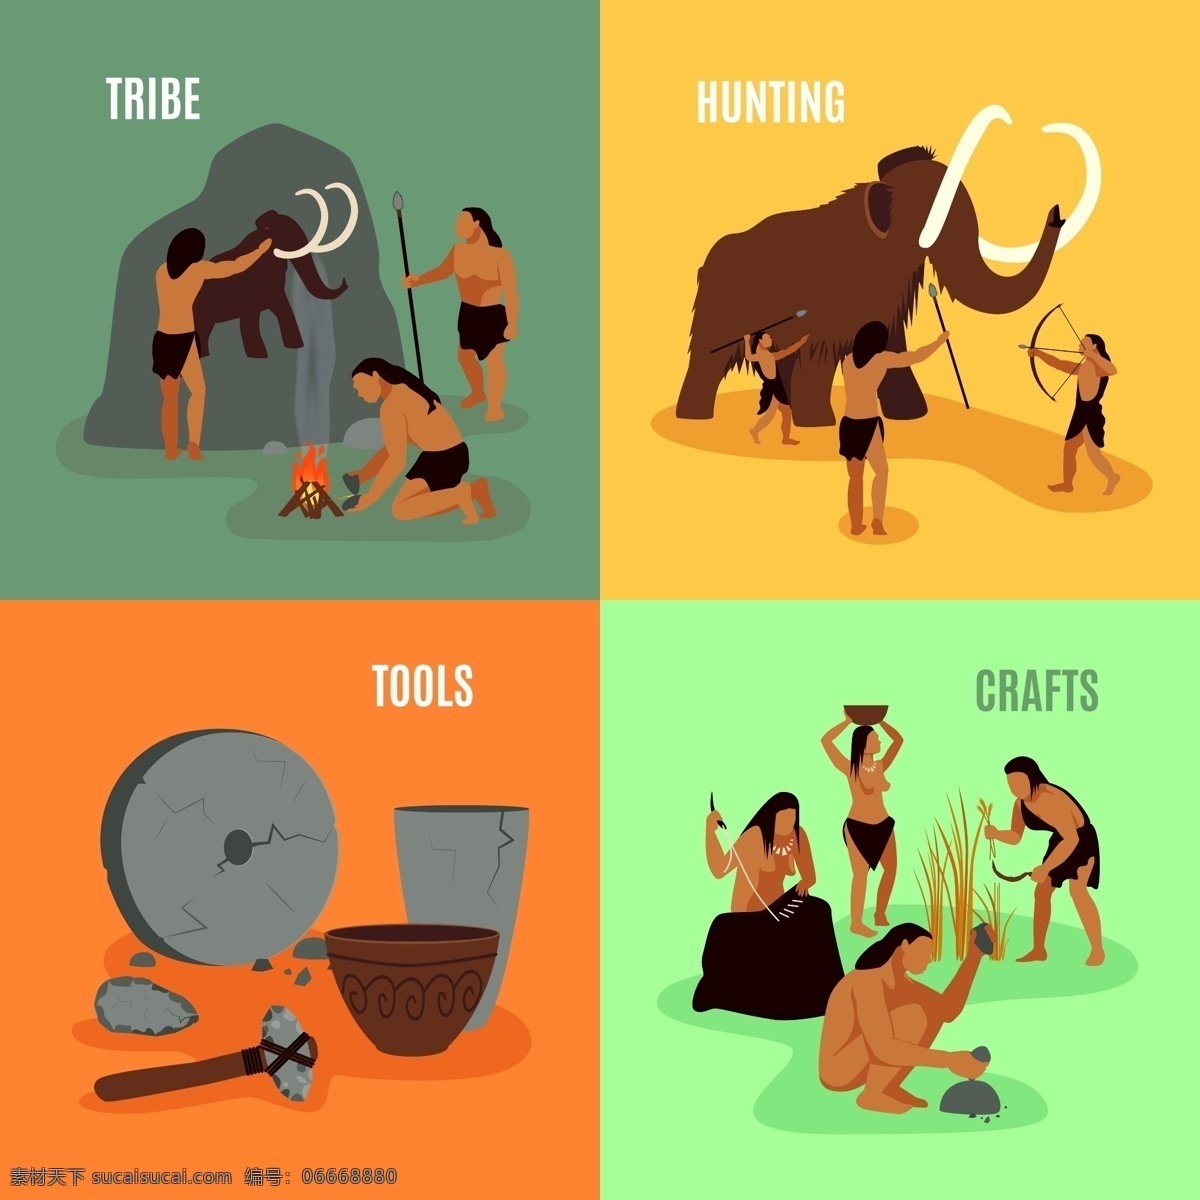 原始人 史前文明 猛犸象 石器时代 工具 古人 生活